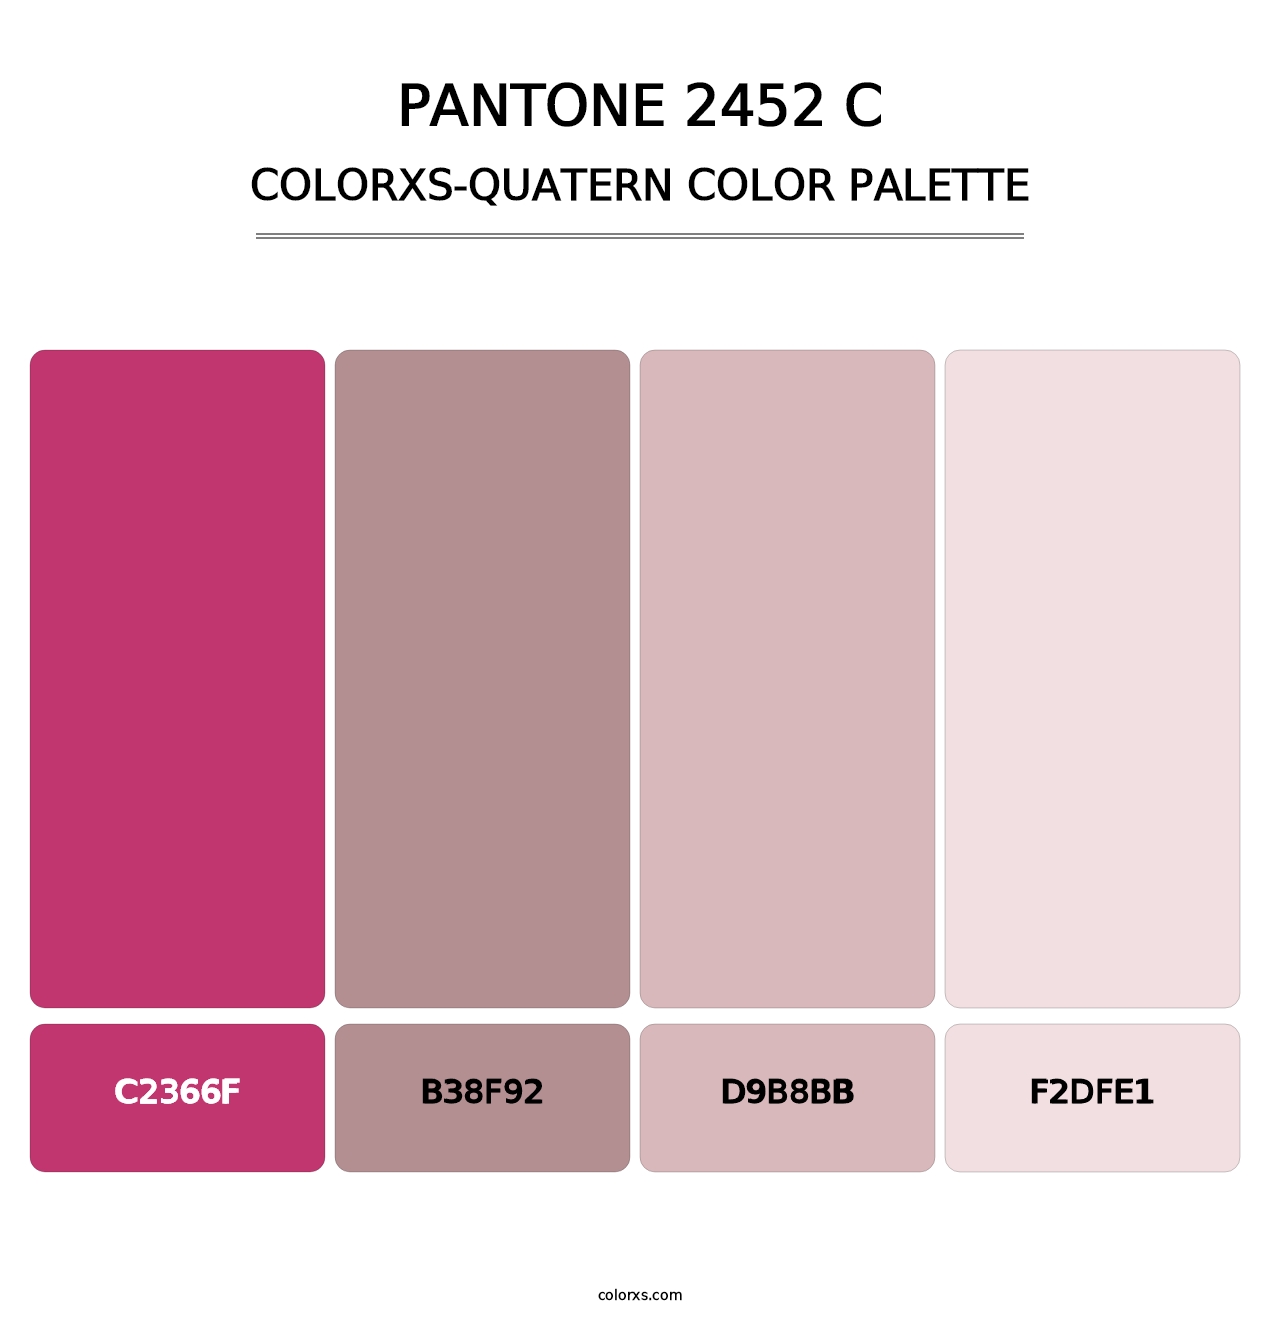 PANTONE 2452 C - Colorxs Quatern Palette